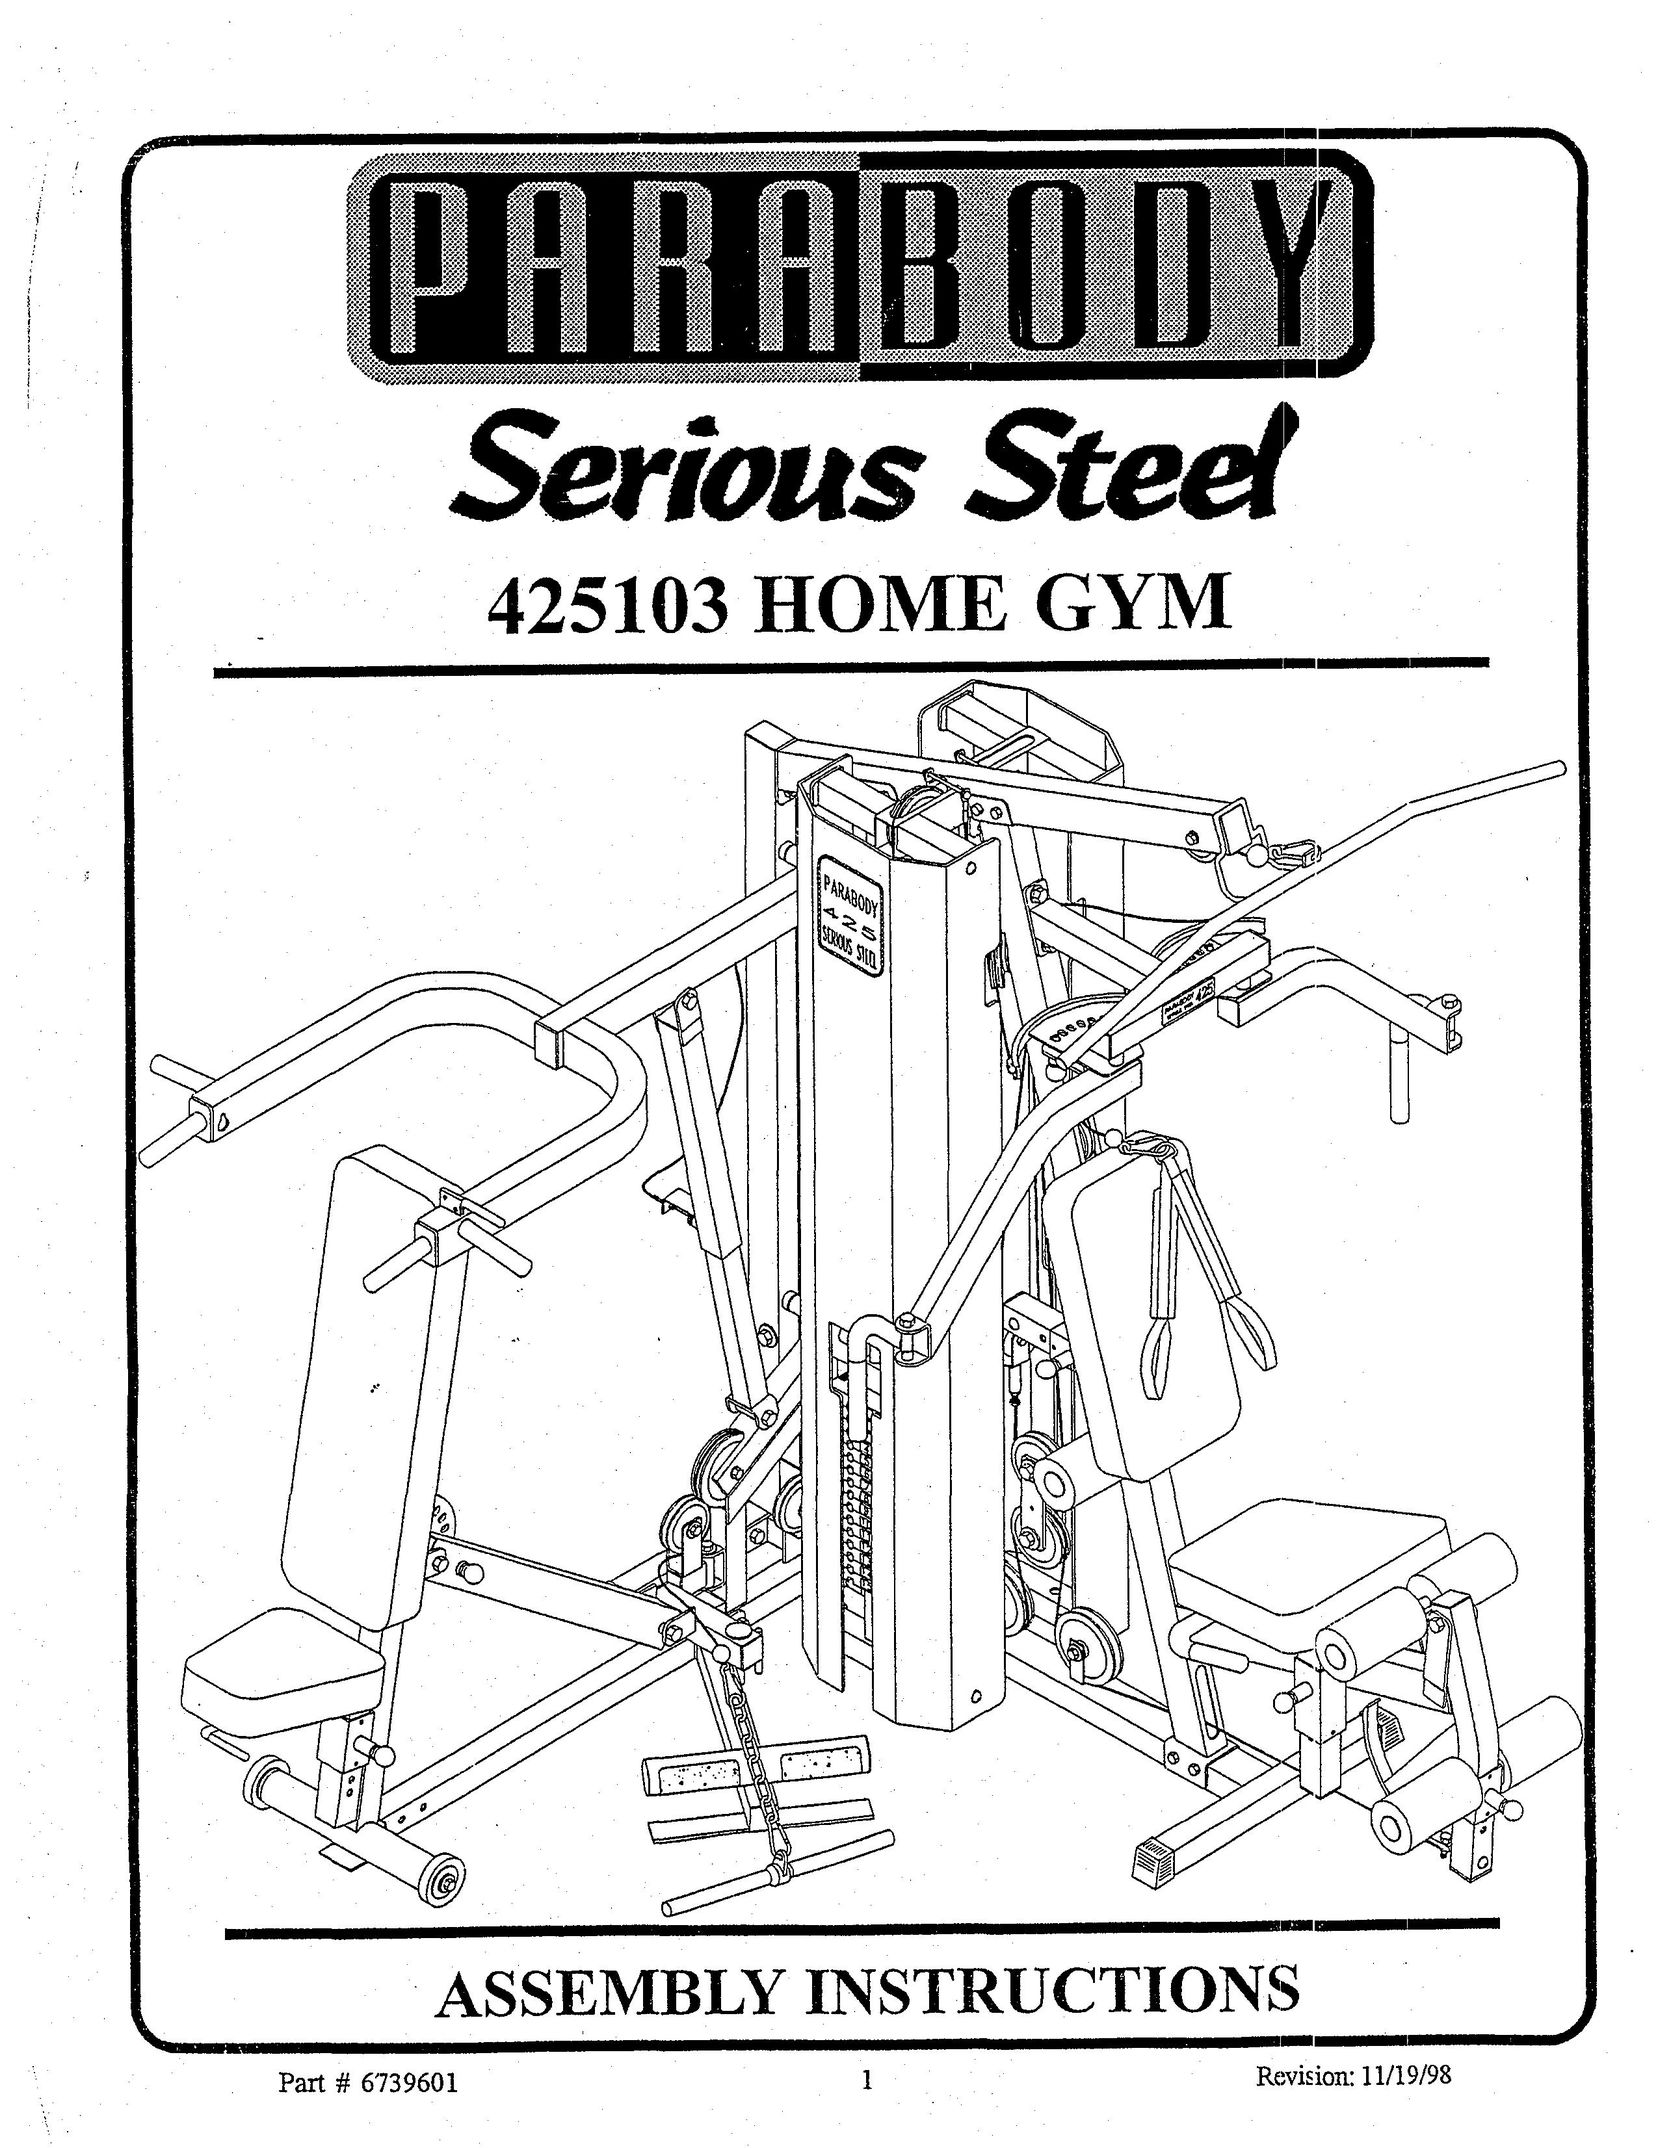 ParaBody 425103 Home Gym User Manual